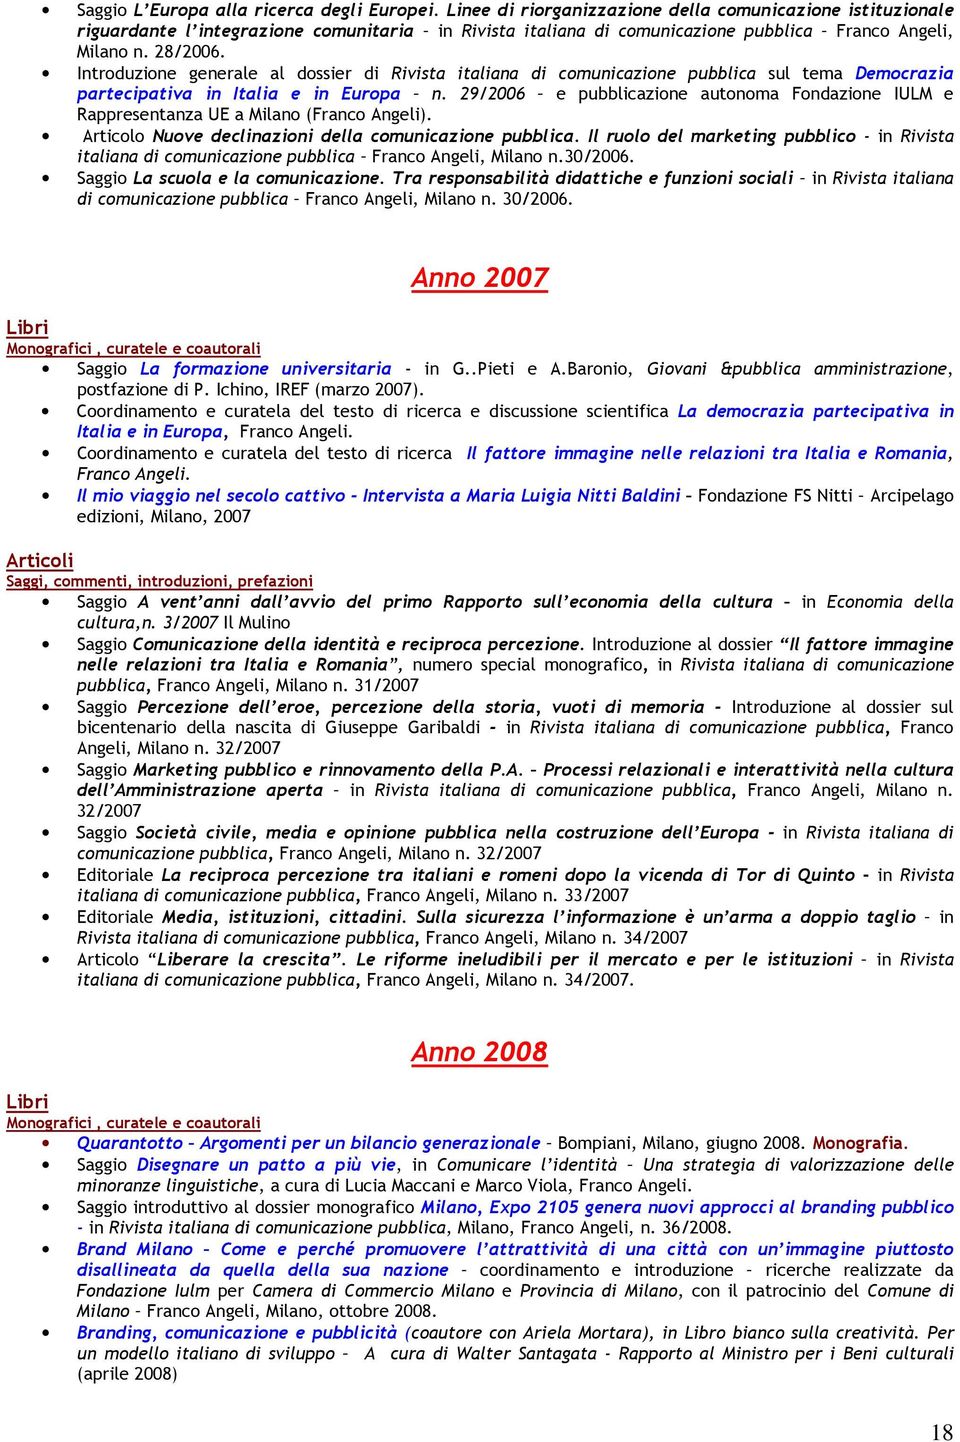 Introduzione generale al dossier di Rivista italiana di comunicazione pubblica sul tema Democrazia partecipativa in Italia e in Europa n.